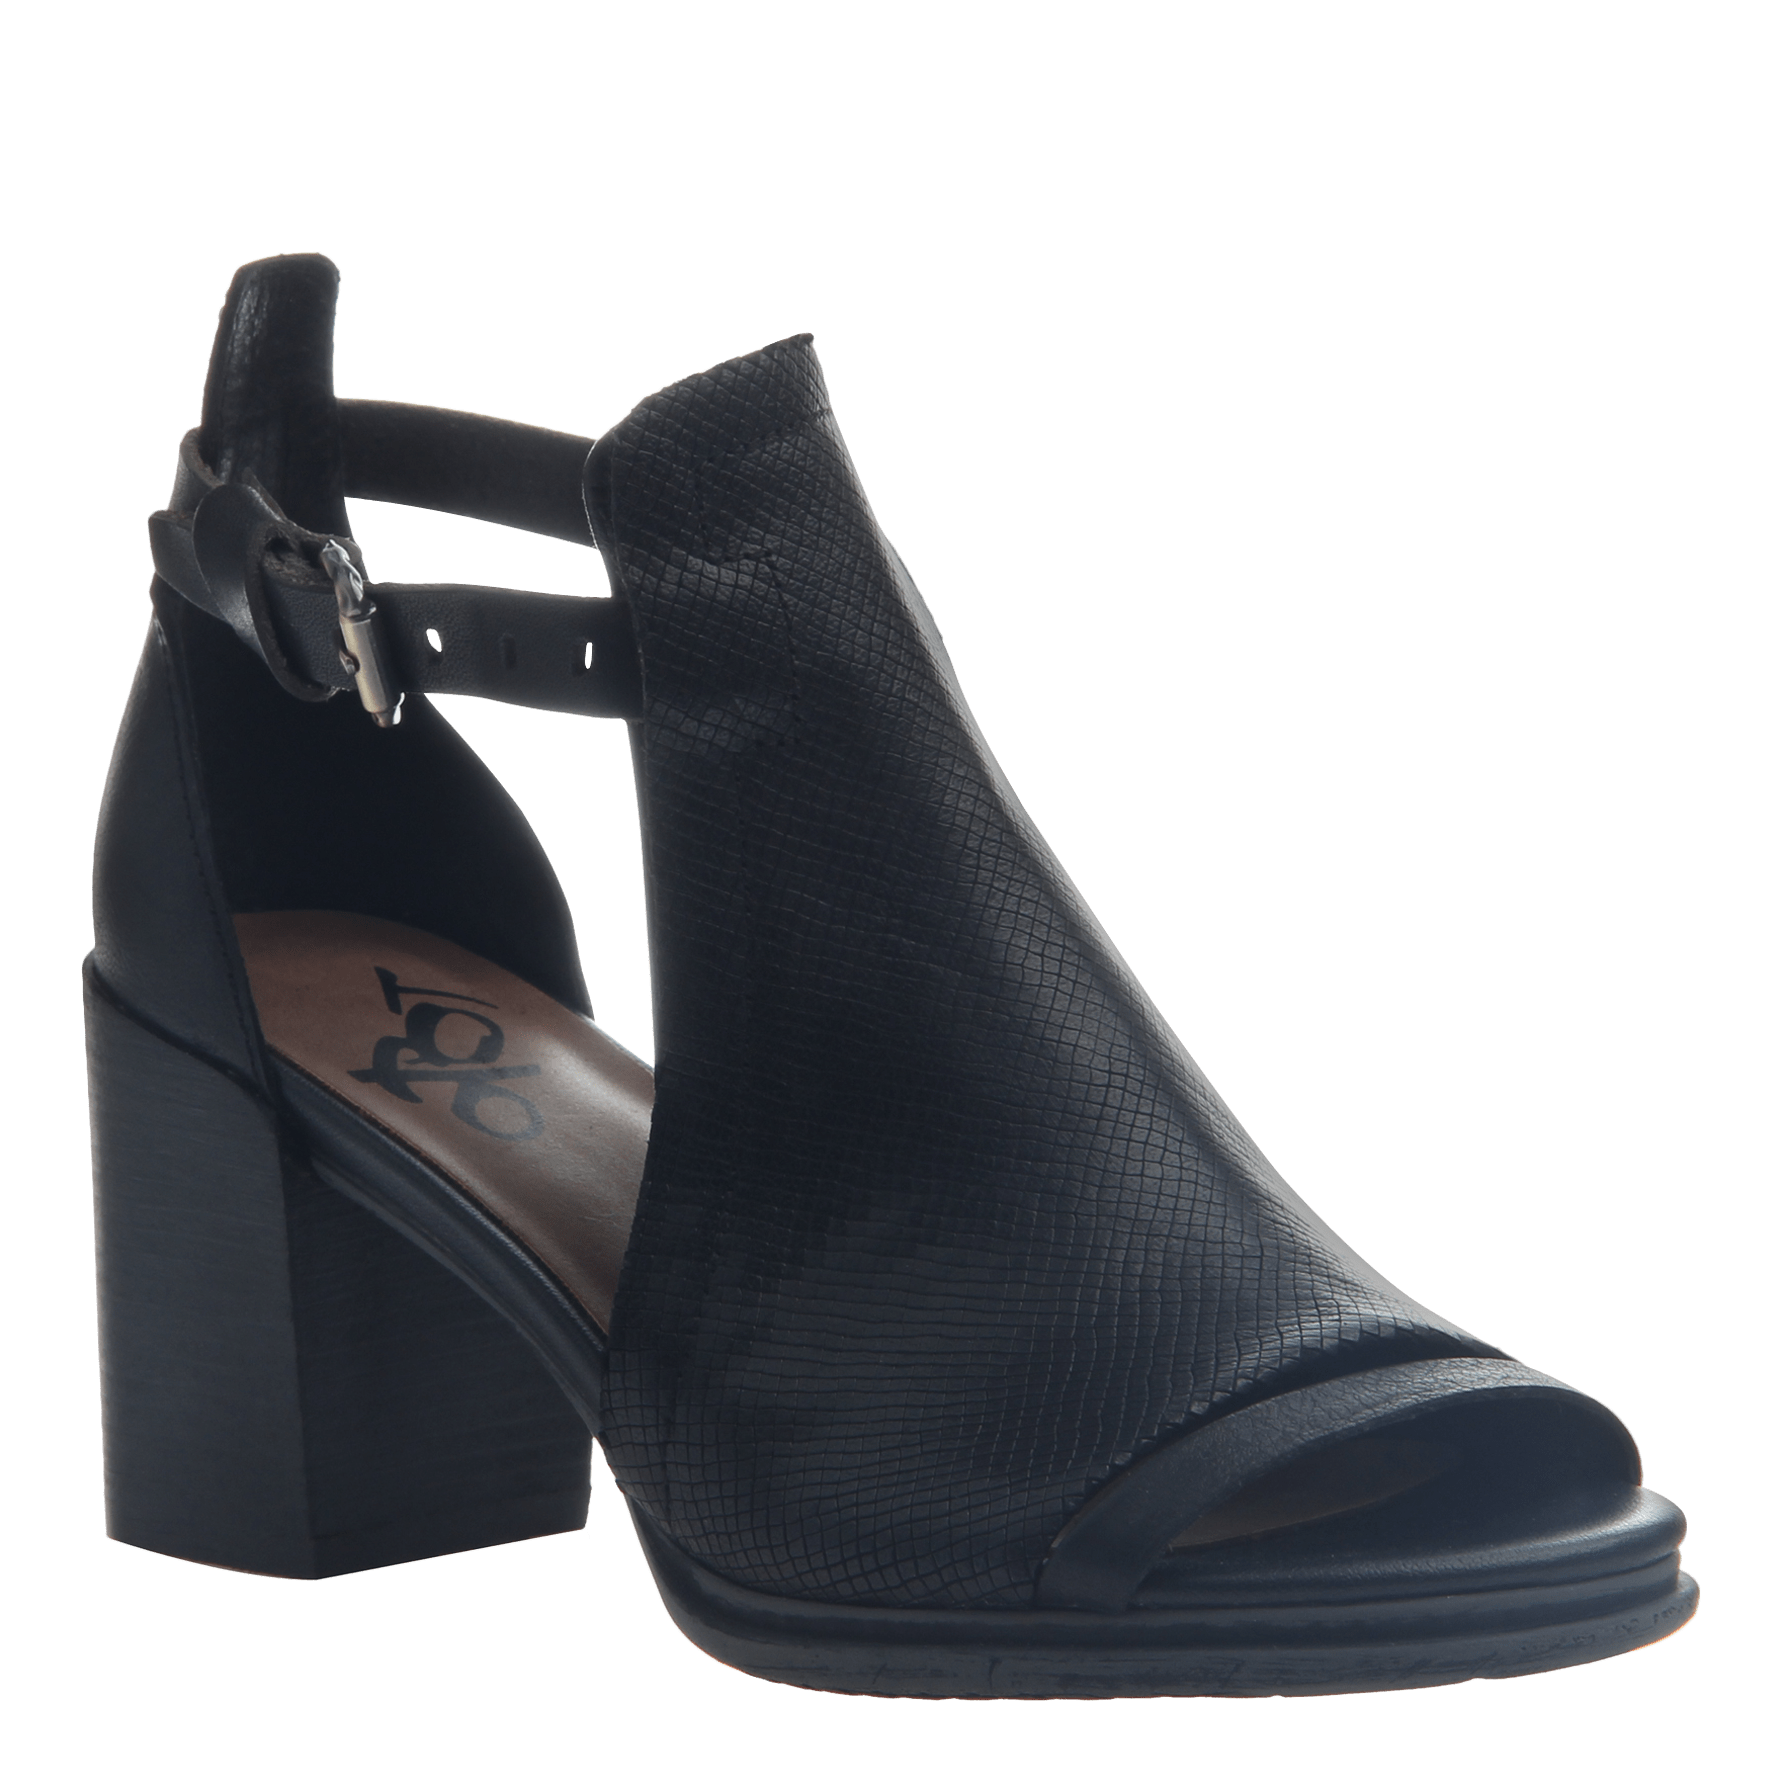 Metaphor in Black Heeled Sandals 